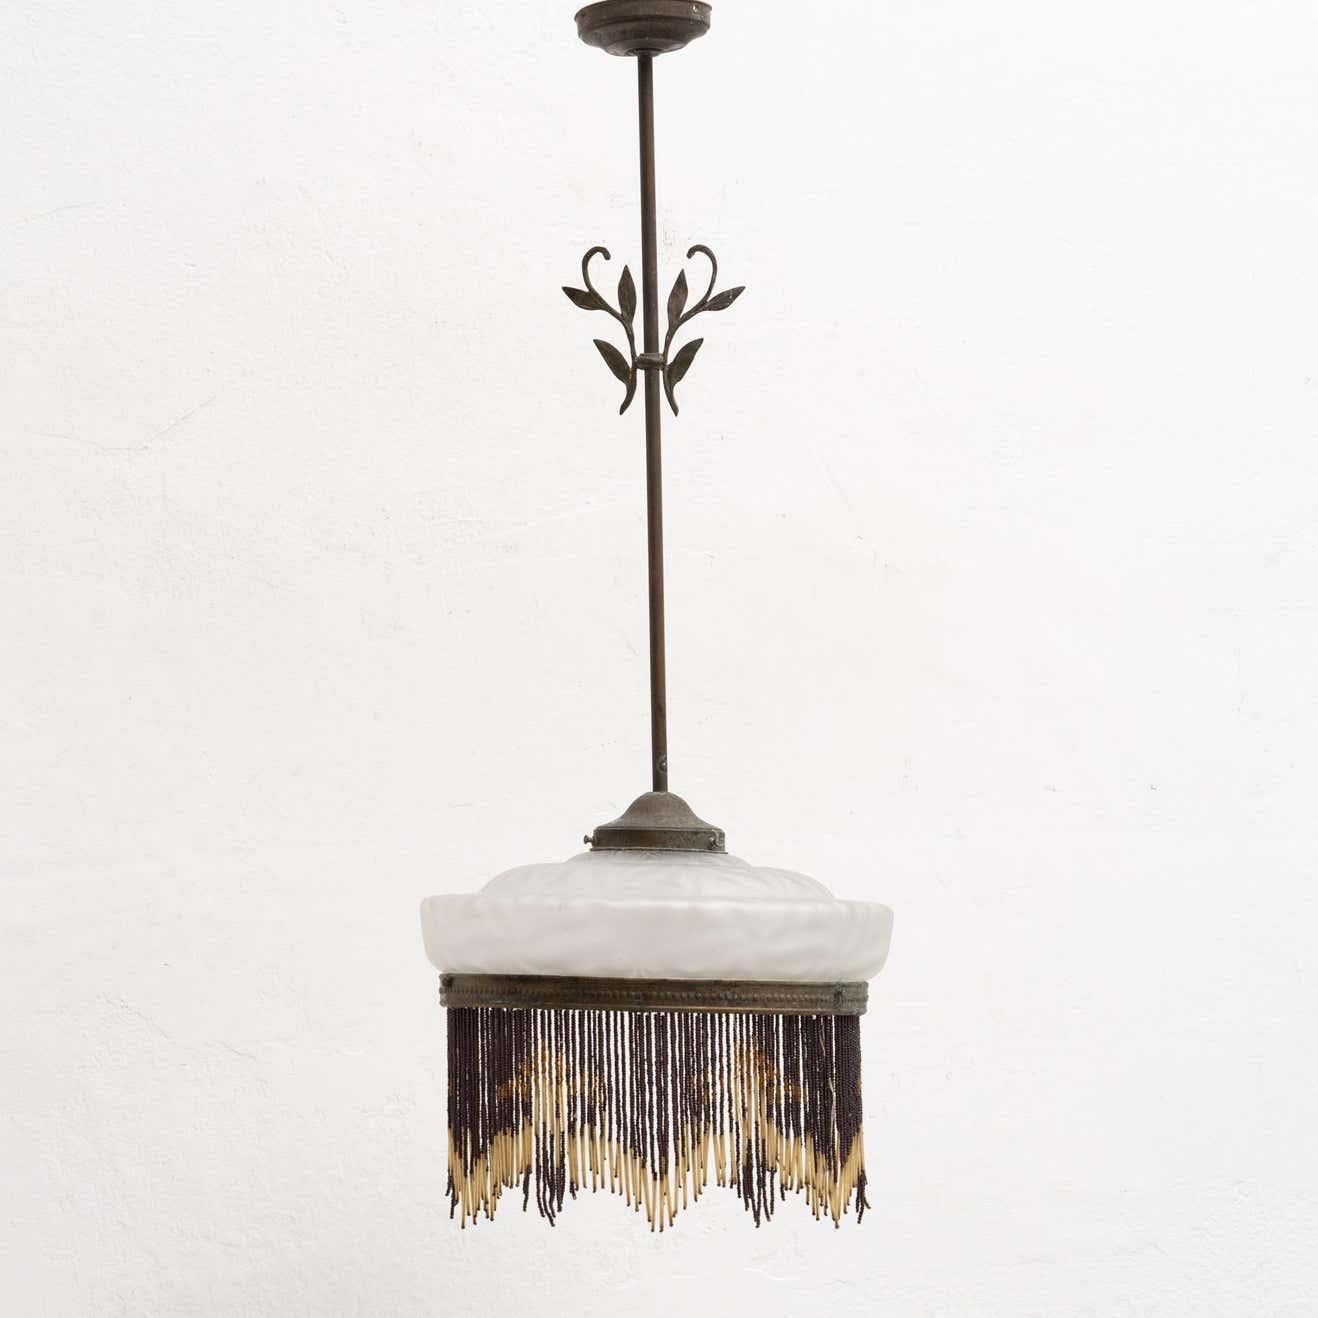 Lampe à suspension Art Déco française en métal et verre.

Par un fabricant inconnu de France, vers 1930.

En état d'origine, avec une usure mineure conforme à l'âge et à l'utilisation, préservant une belle patine.

Matériaux :
Verre
Métal.
 